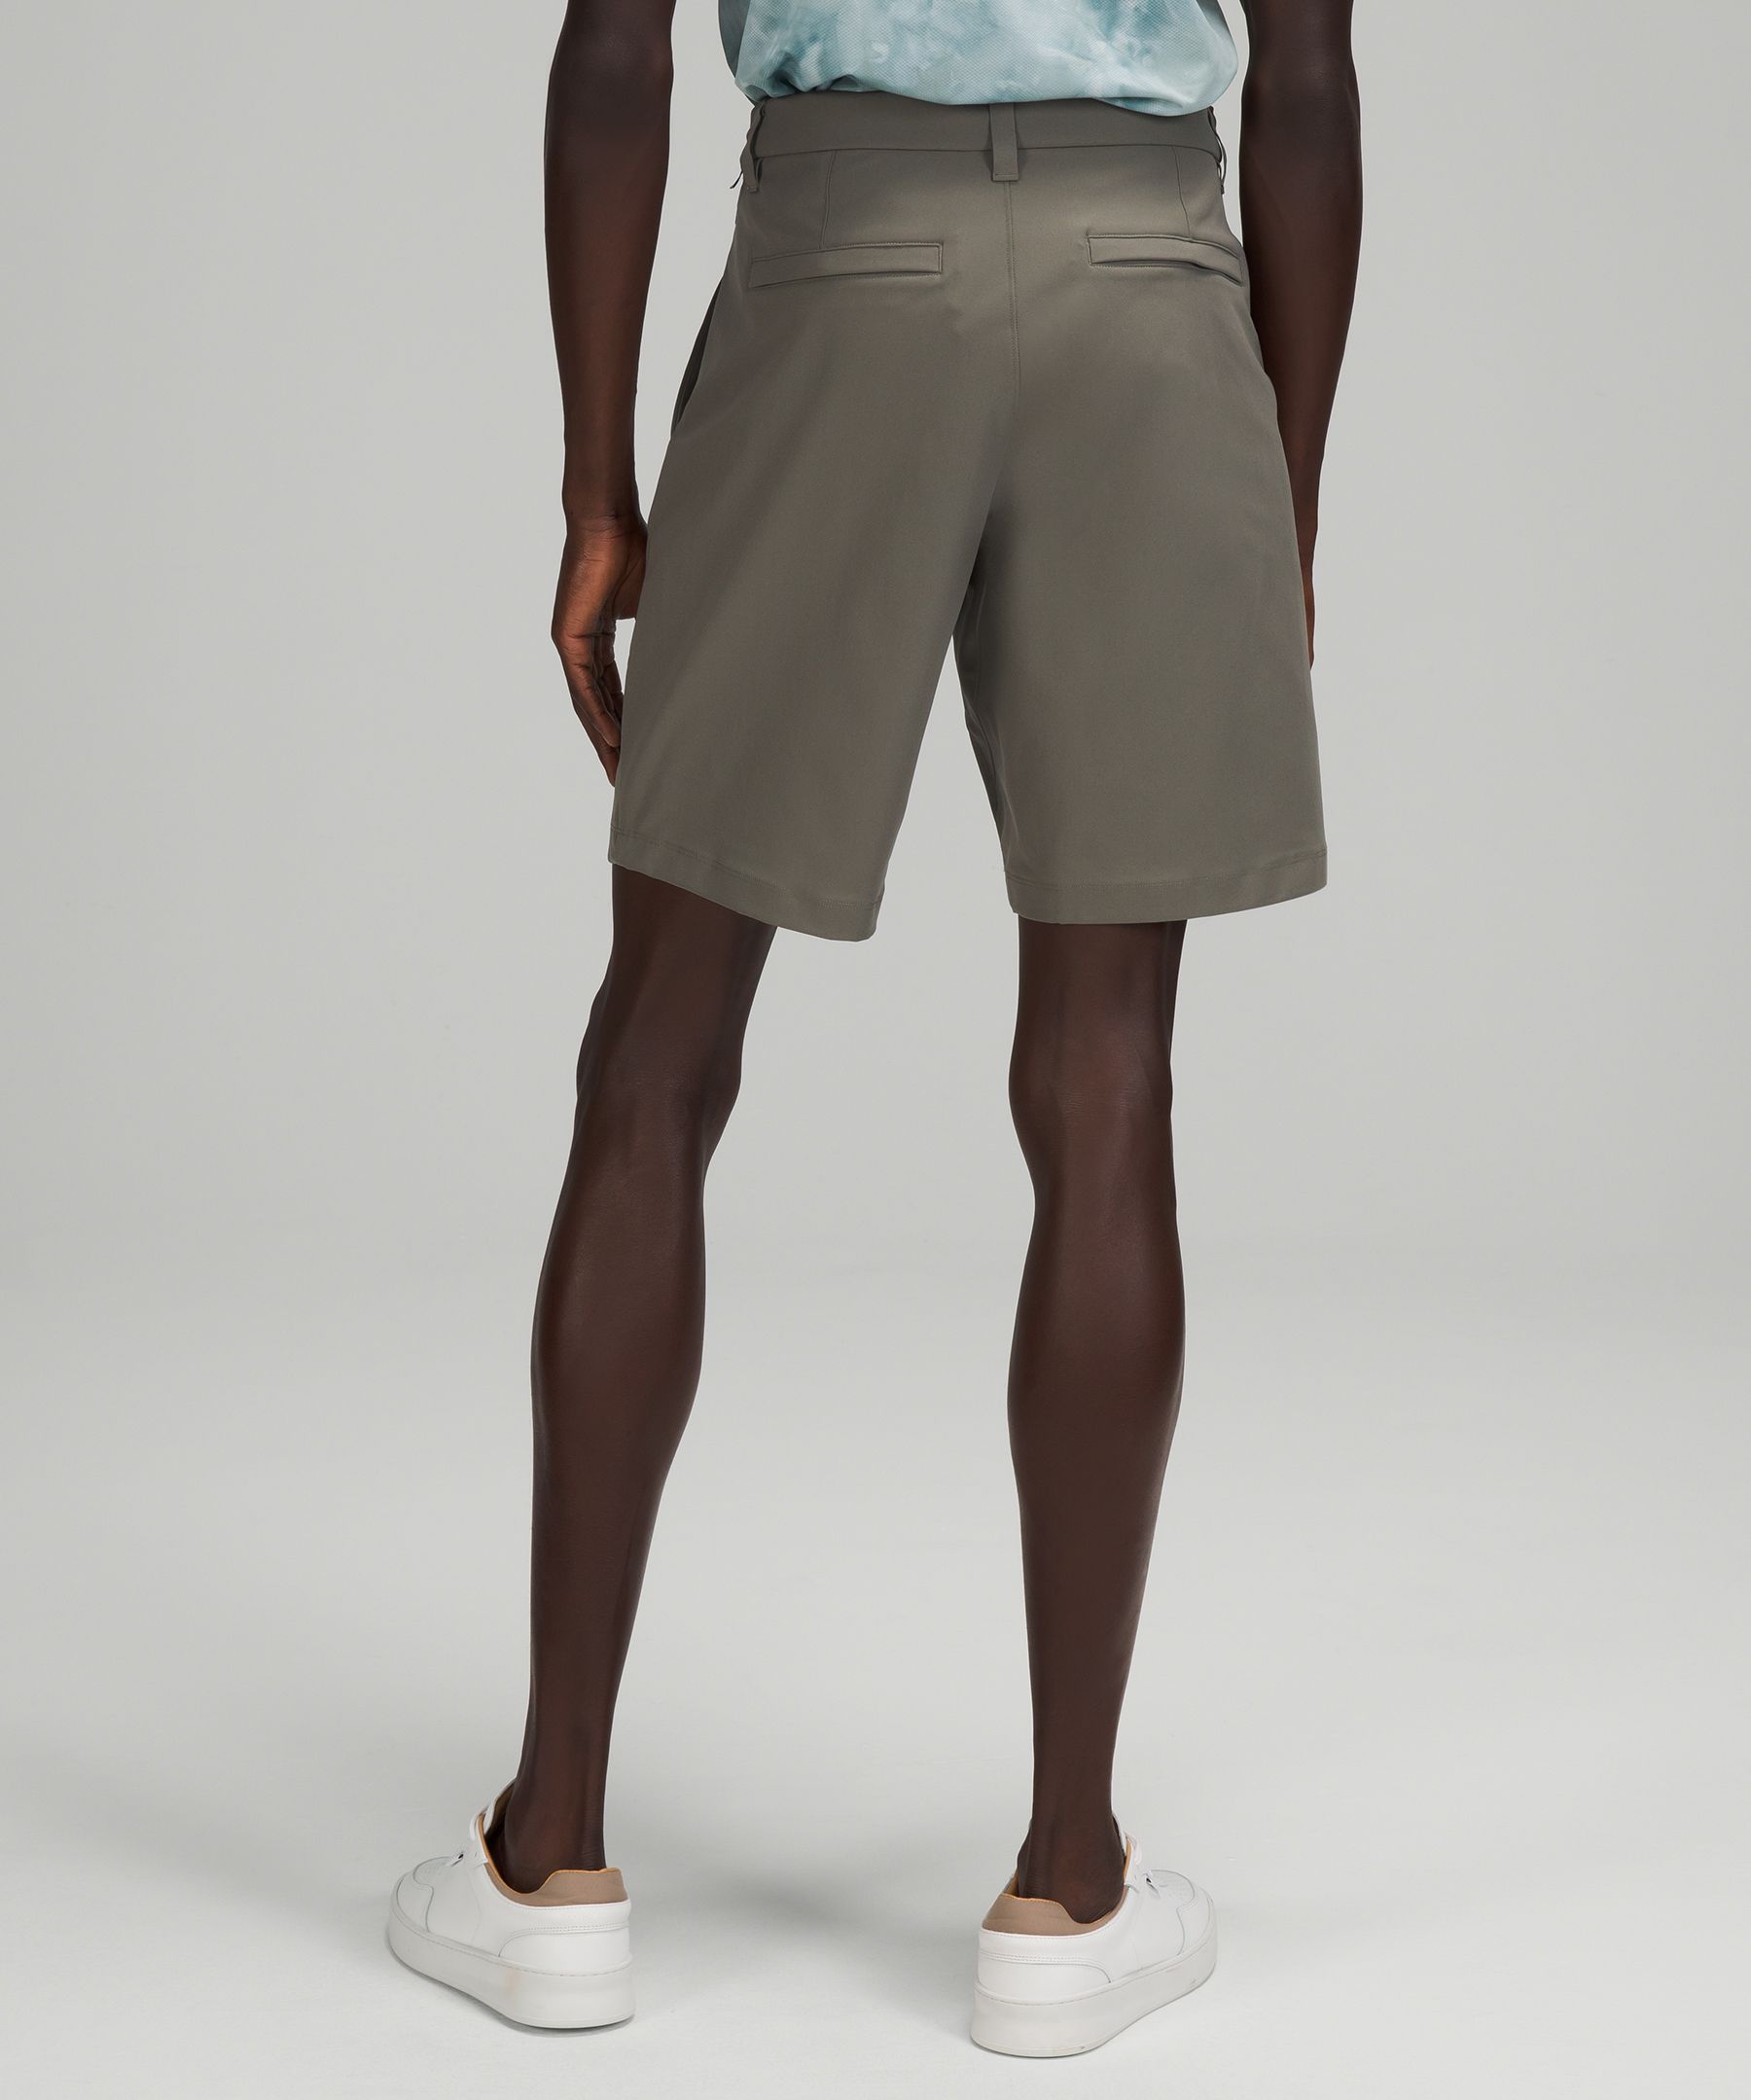 mens shorts lululemon